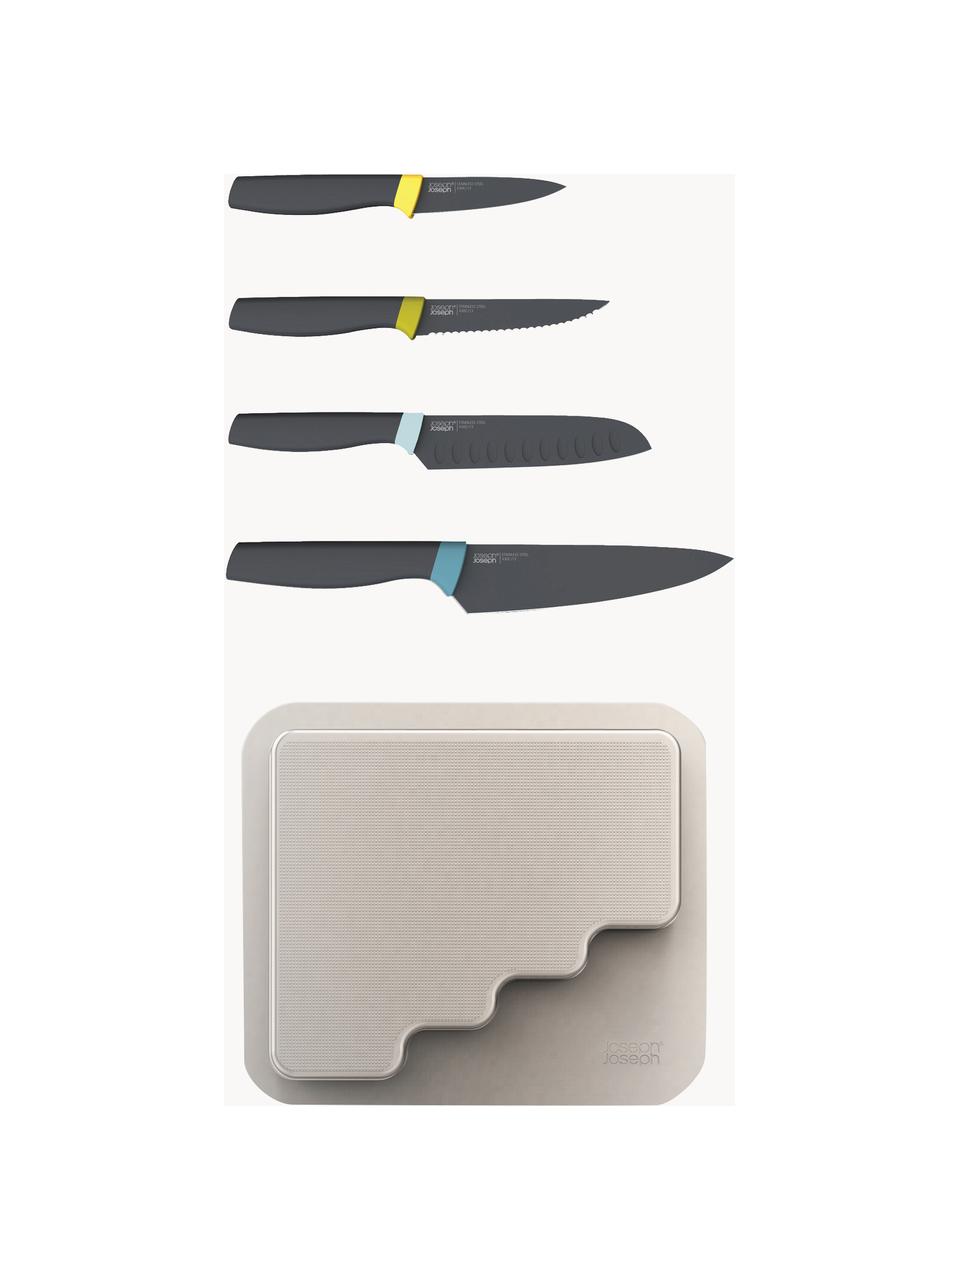 Messer Door Store mit Aufbewahrungsregal, 5er-Set, Messer: Edelstahl, gebürstet, Griffe: Silikon Die Messer sind a, Hellbeige, Grün- und Blautöne, Set mit verschiedenen Grössen